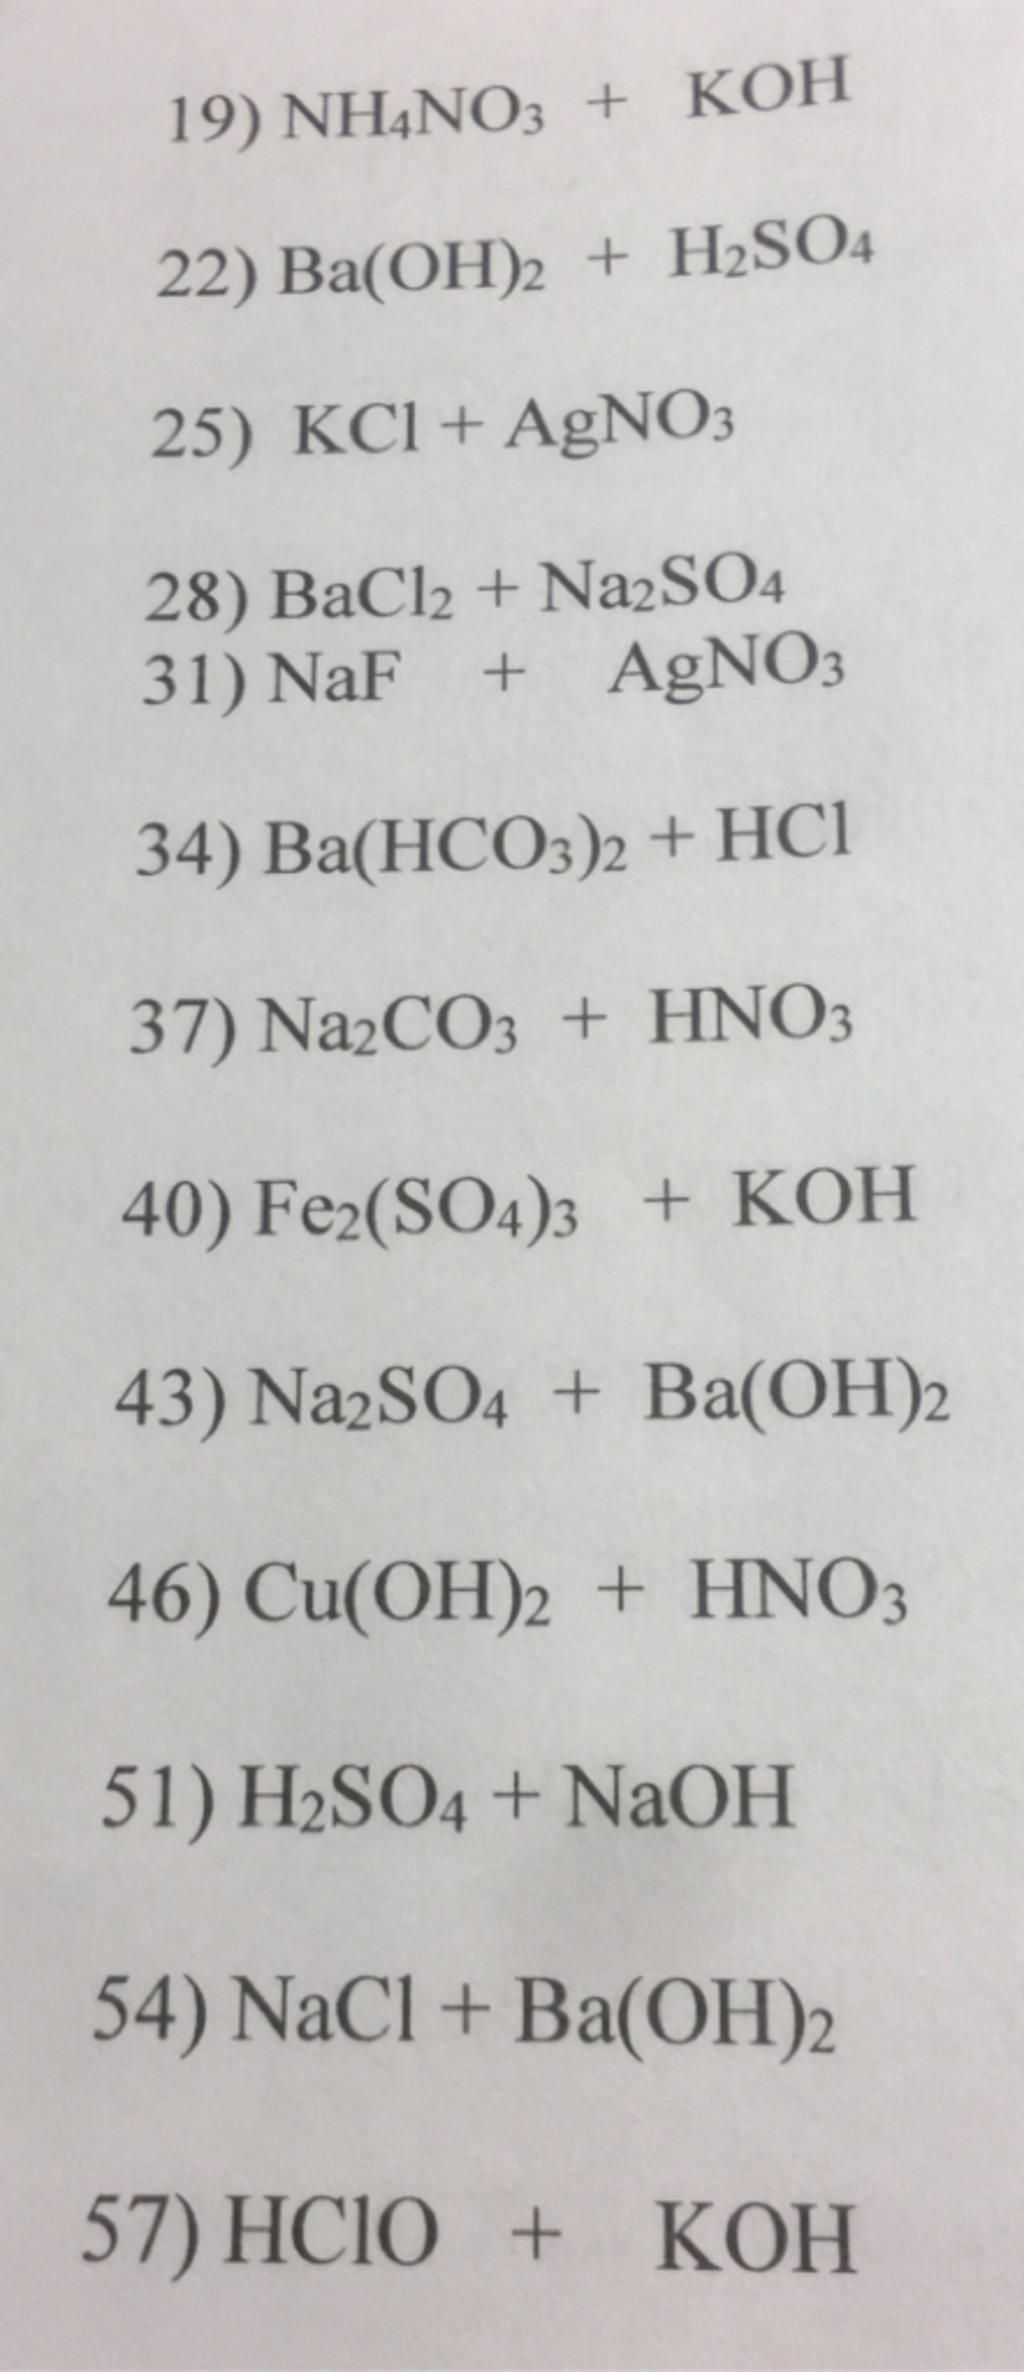 Phương trình phản ứng nh4no3 naoh pt ion trong dung dịch